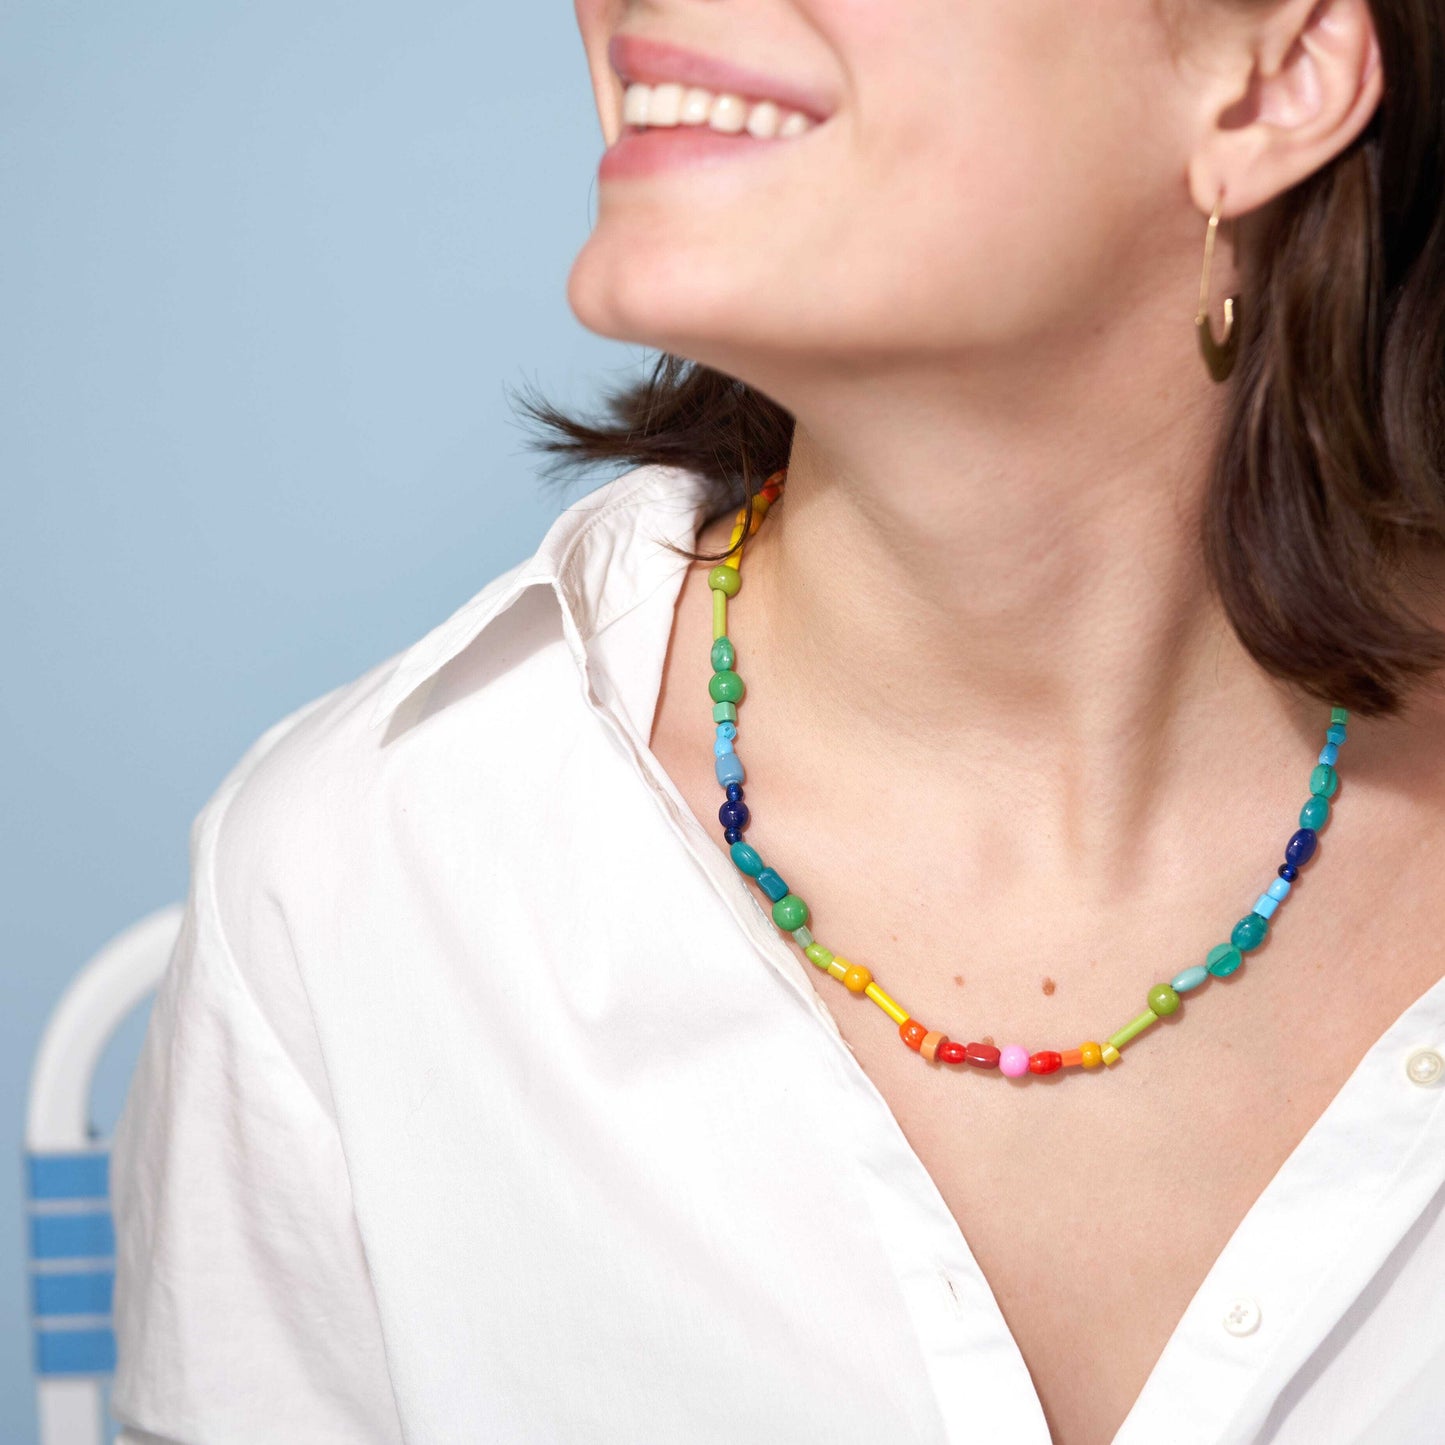 Wanda Multi Mix Beaded Necklace Rainbow Necklaces